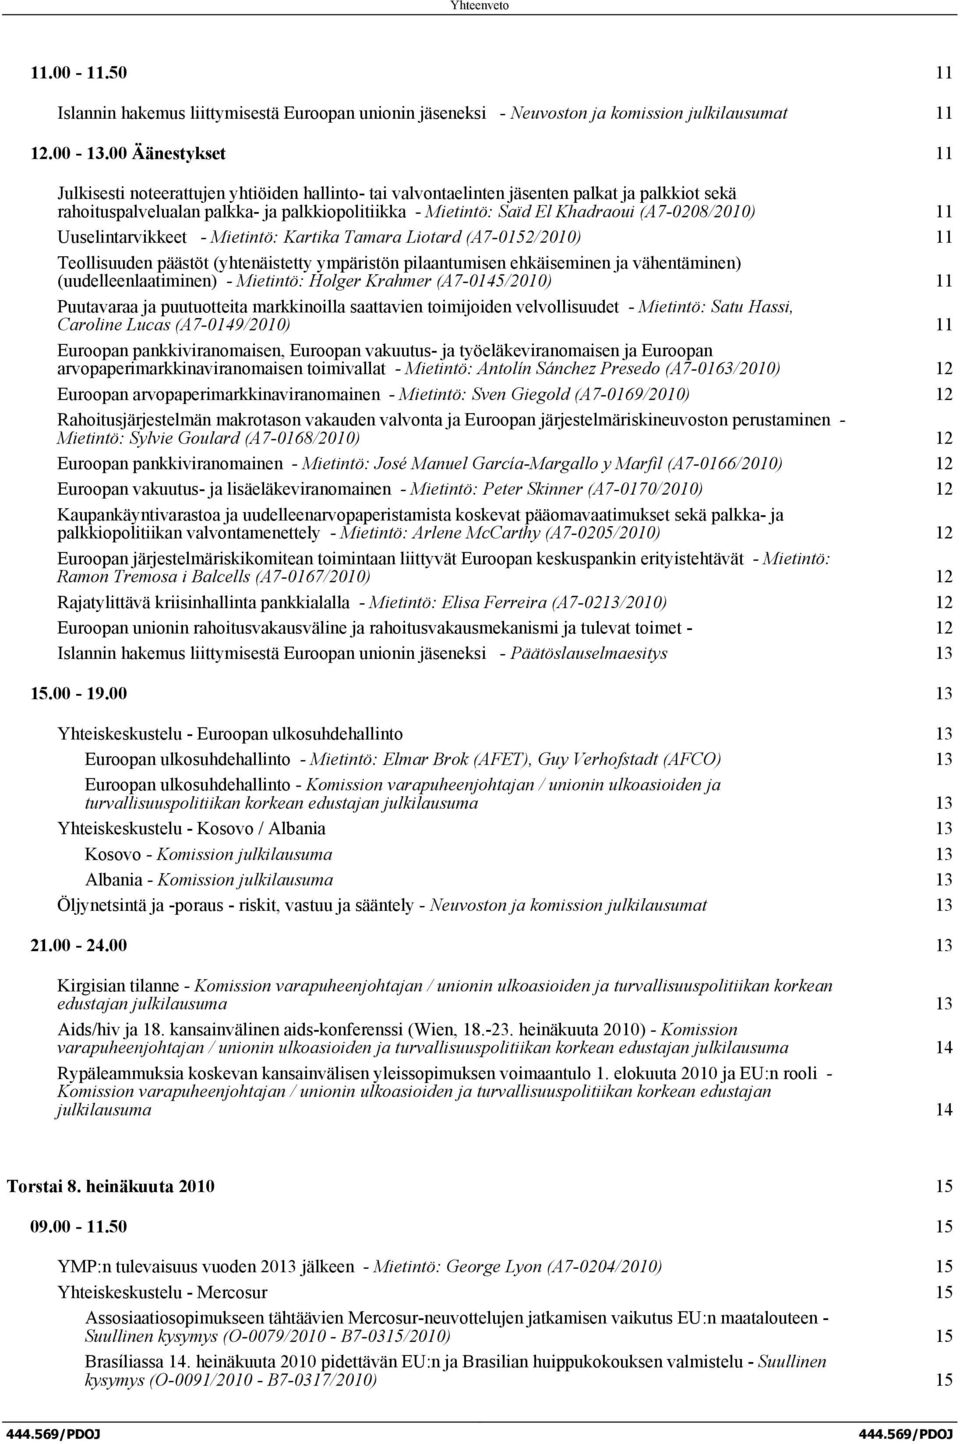 (A7-0208/2010) 11 Uuselintarvikkeet - Mietintö: Kartika Tamara Liotard (A7-0152/2010) 11 Teollisuuden päästöt (yhtenäistetty ympäristön pilaantumisen ehkäiseminen ja vähentäminen)